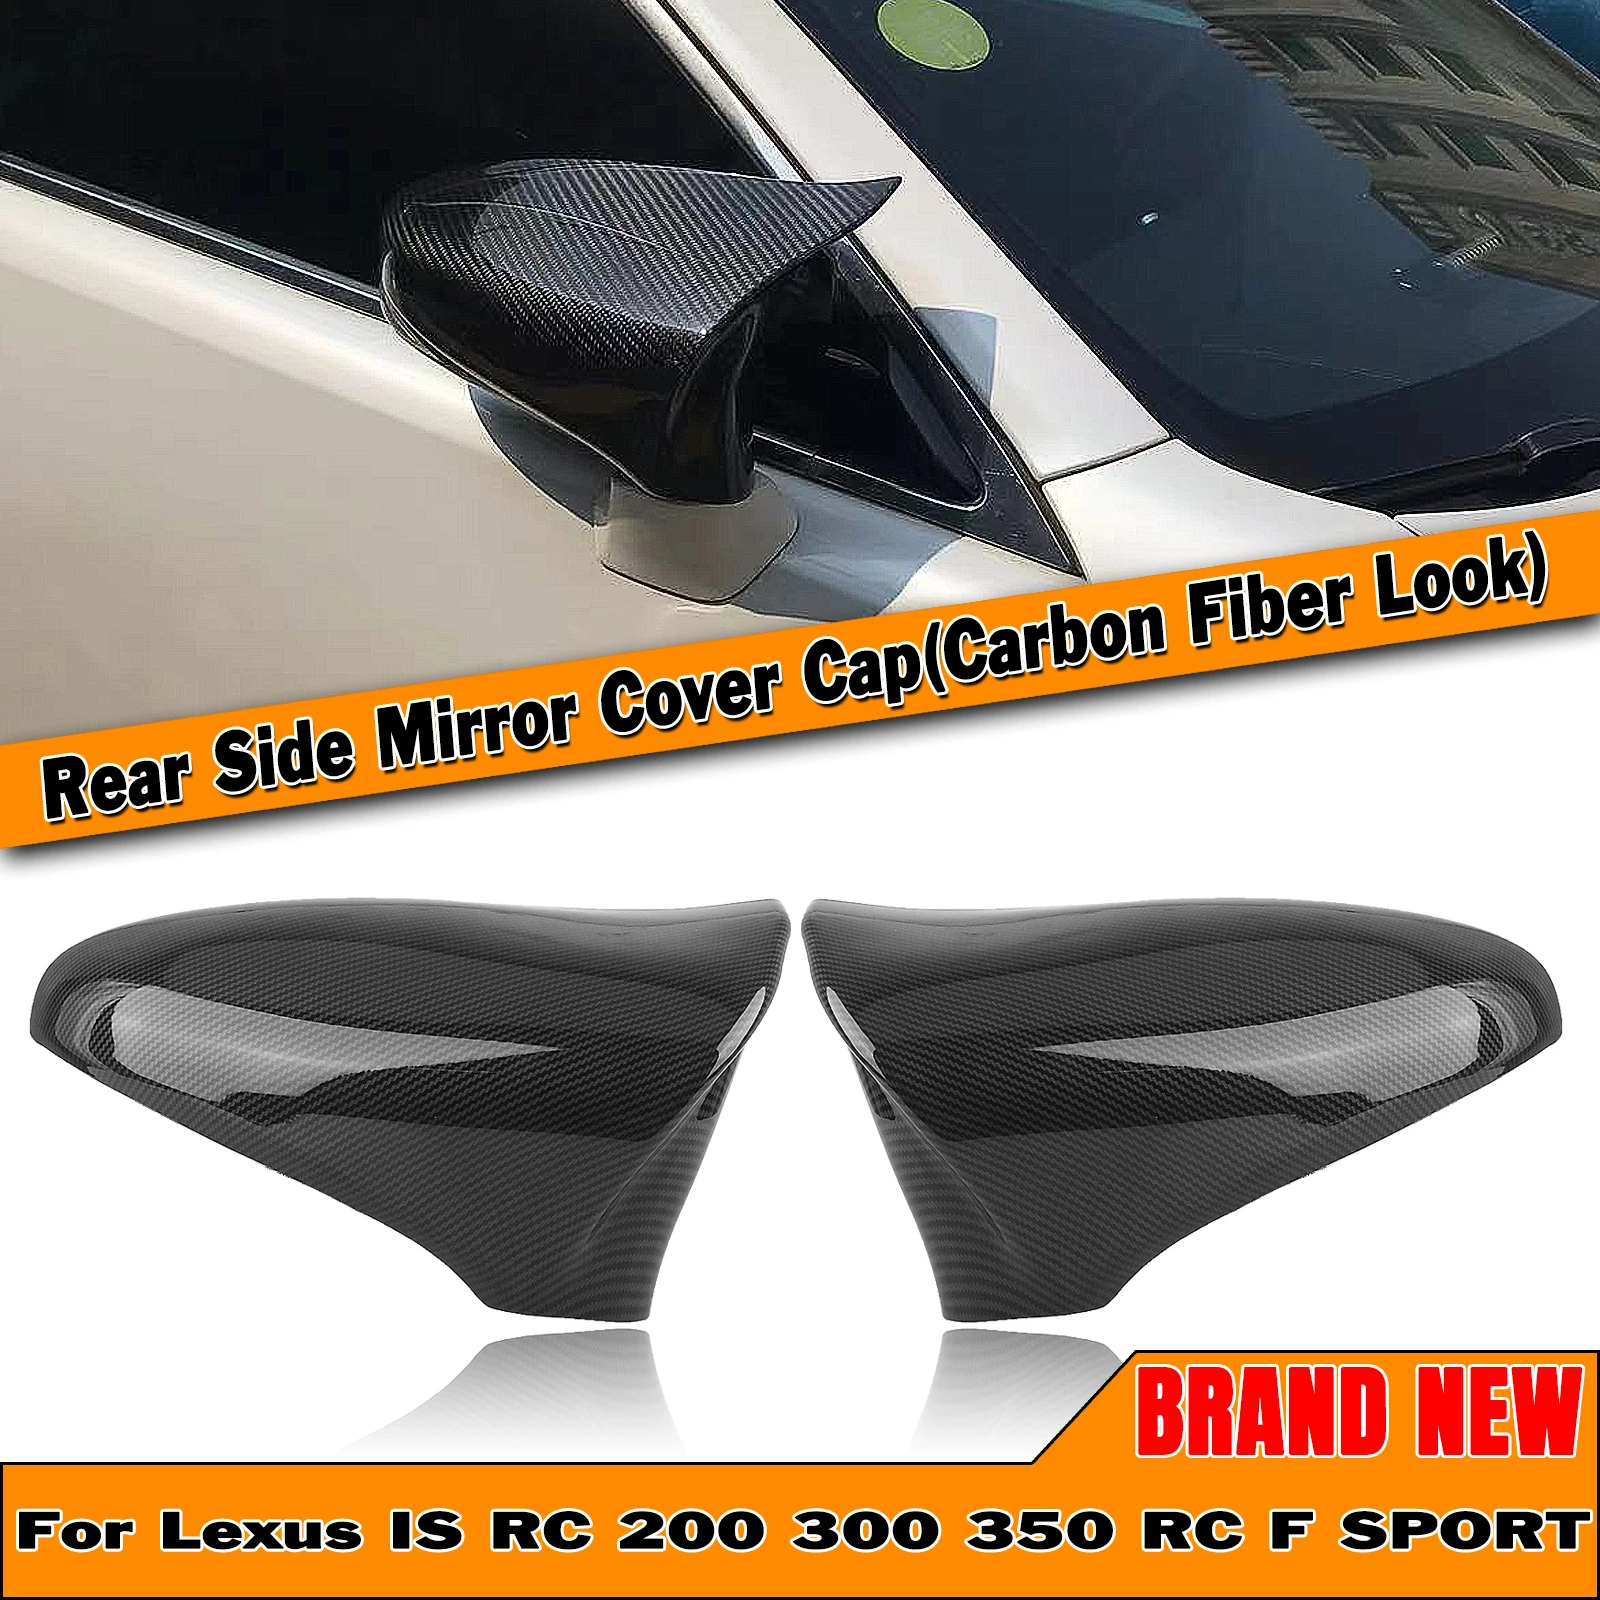 

Зеркальная Крышка для Lexus IS200 250 300 RC 200 300 350 RC F SPORT IS CT ES LS GS из углеродного волокна, черная глянцевая крышка заднего вида